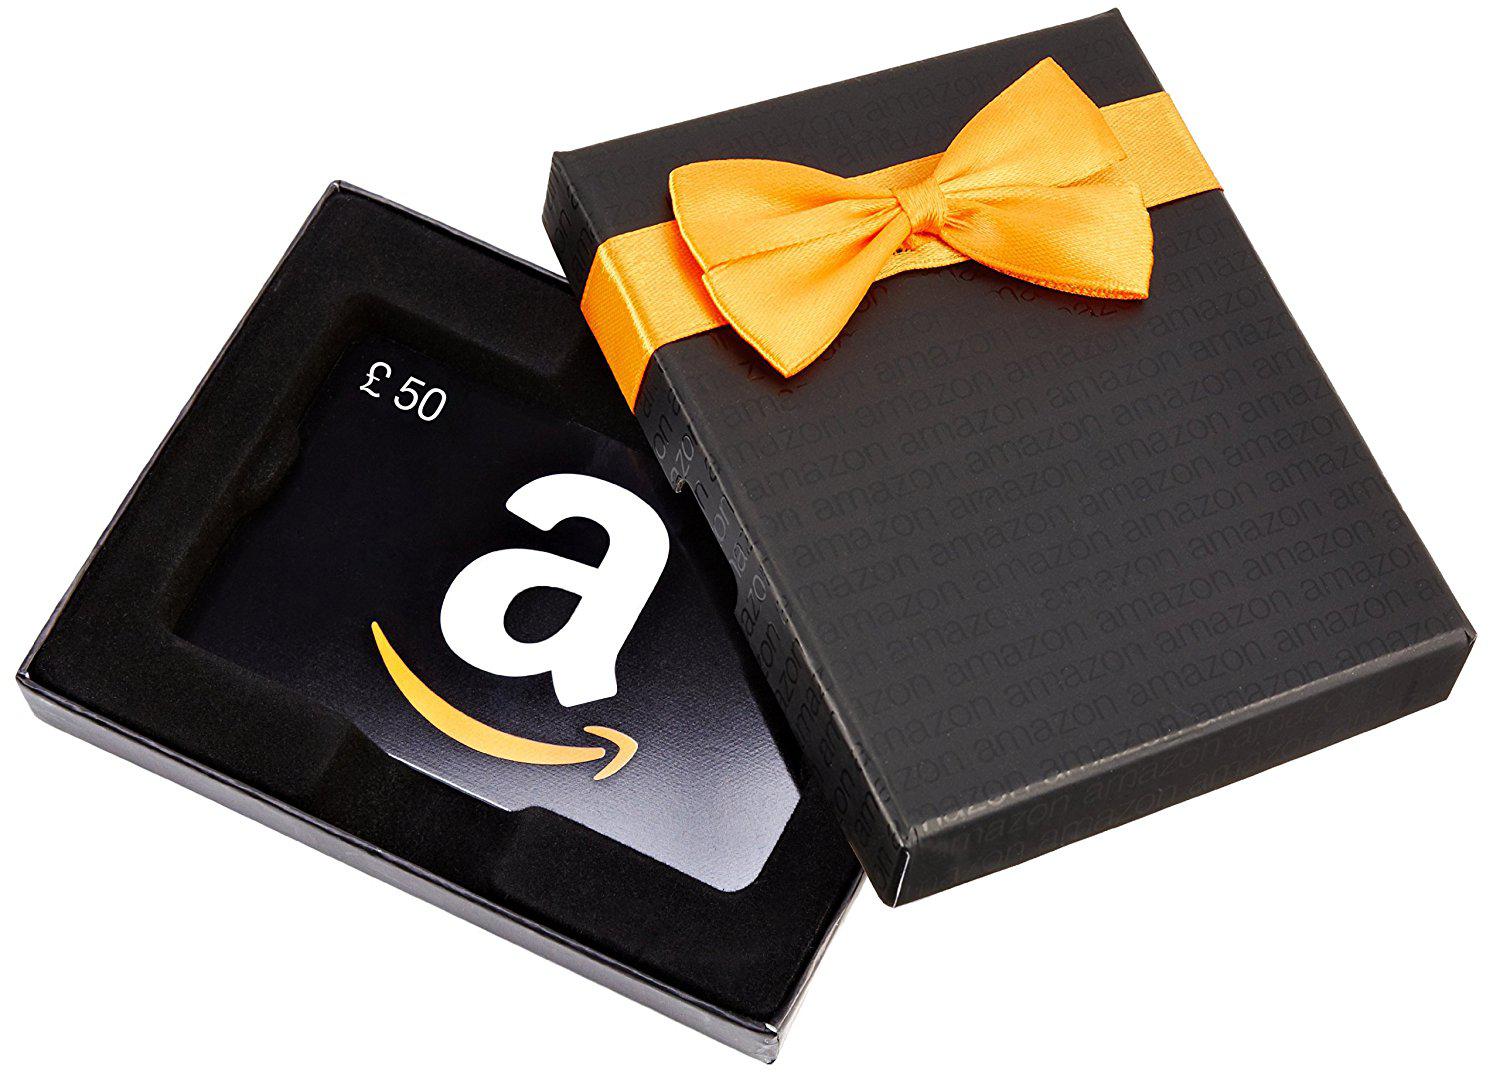 Если вы обращаетесь к подарочным сертификатам Amazon для своих рождественских покупок, то здесь есть все, что вам нужно знать